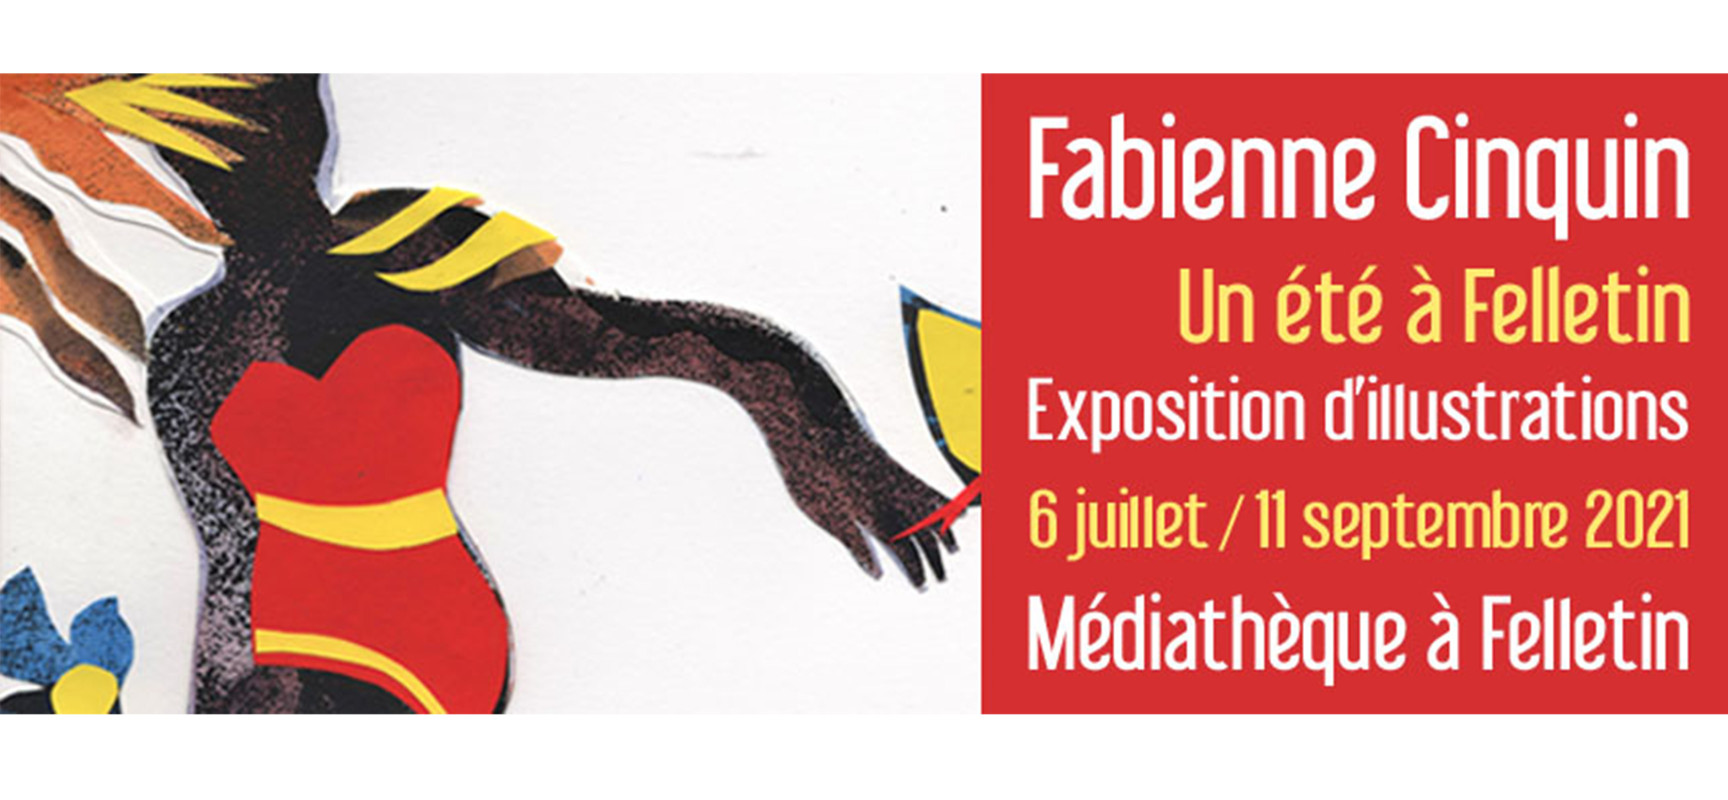 Fabienne Cinquin, Un été à Felletin – Exposition d’illustrations du 6 juillet au 11 septembre 2021 à la médiathèque à Felletin